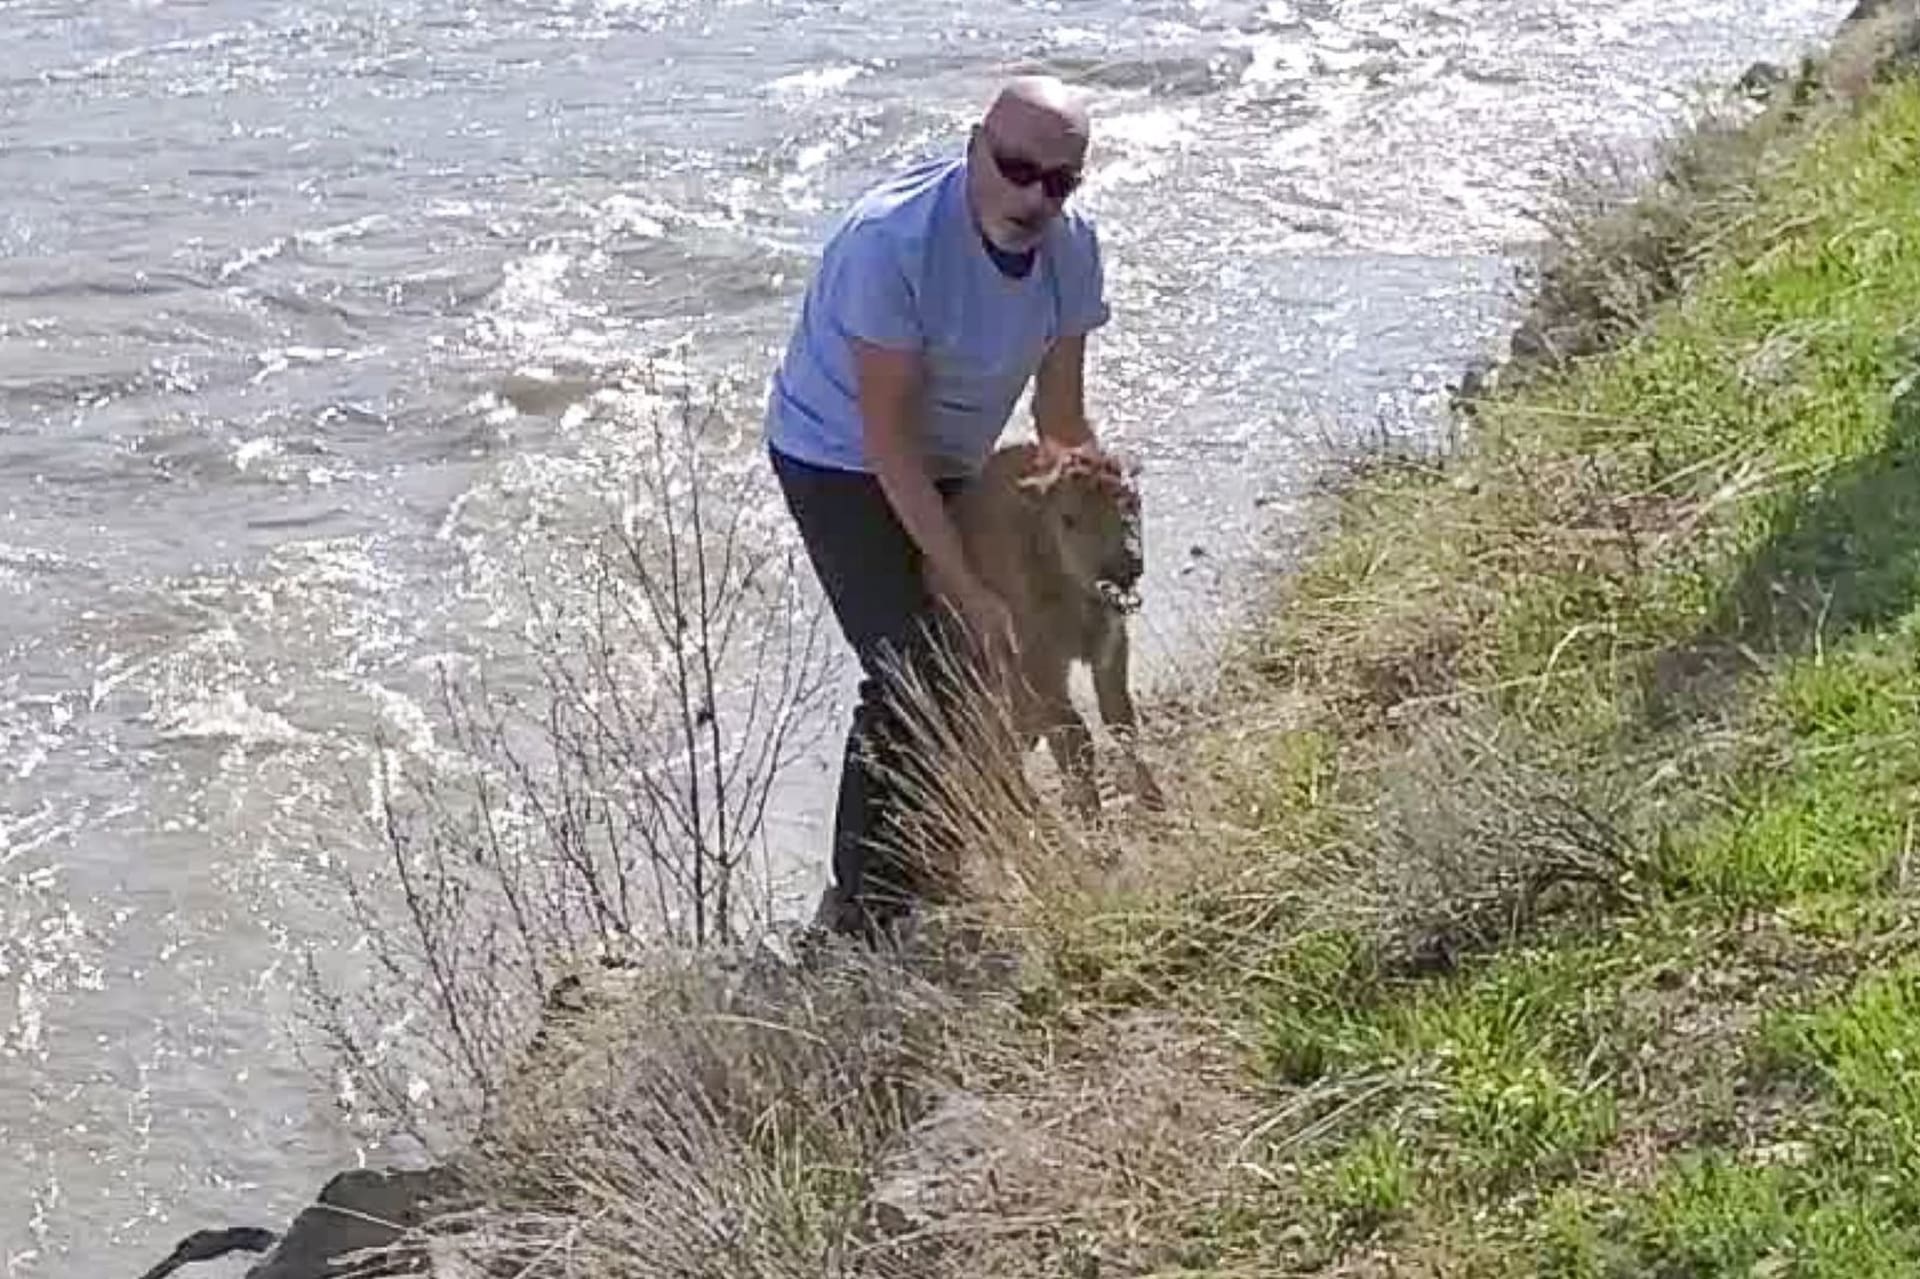 Turista chtěl pomoct mláděti bizona z vody, zvíře museli utratit